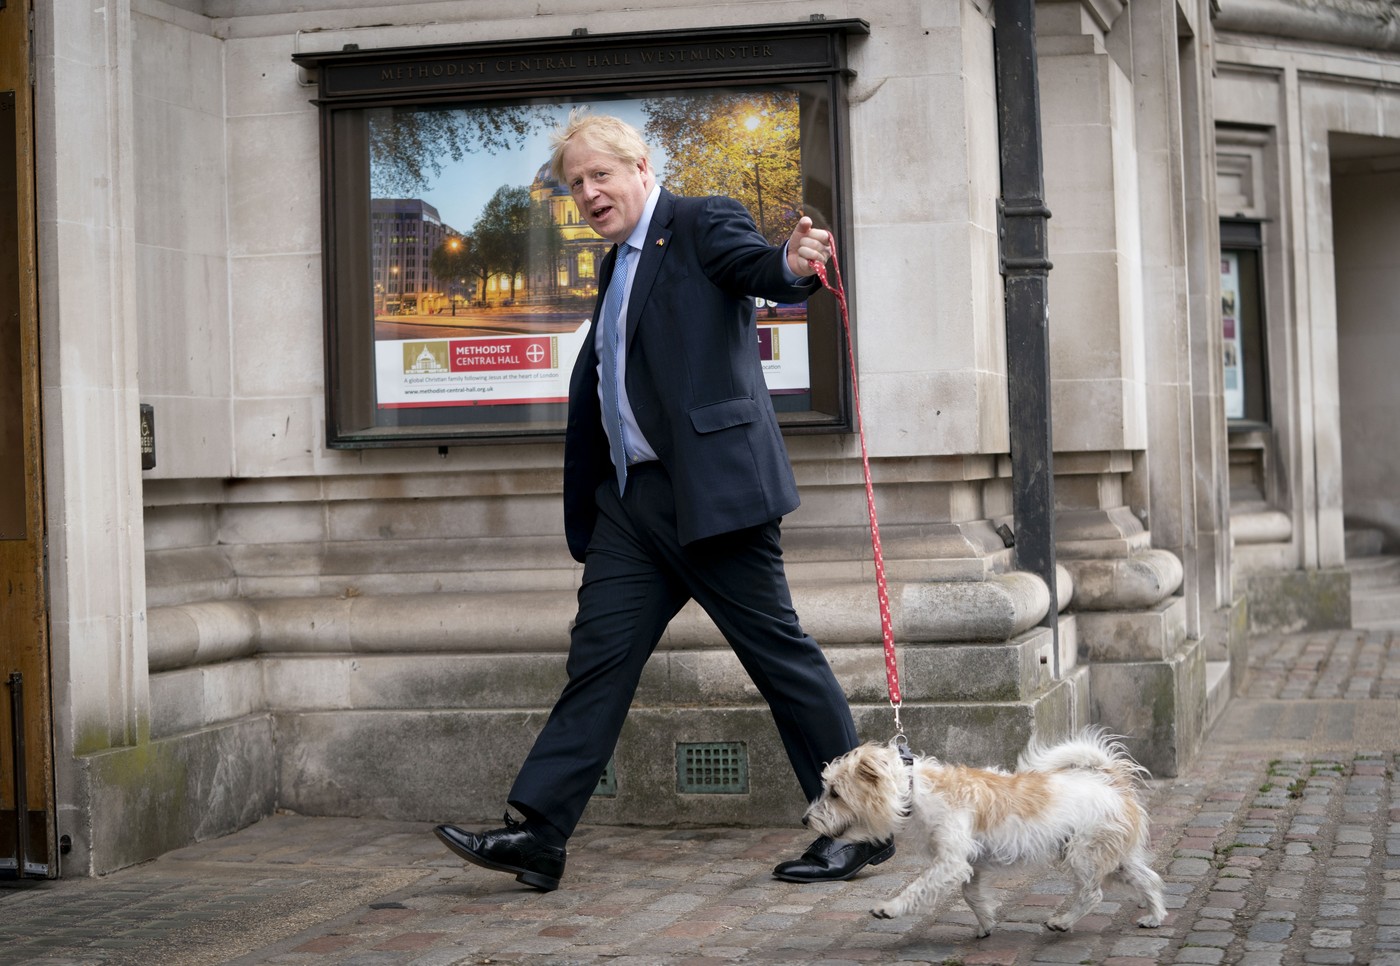 Câinele lui Boris Johnson a umplut de purici reședința prim-miniștrilor britanici din Downing Street